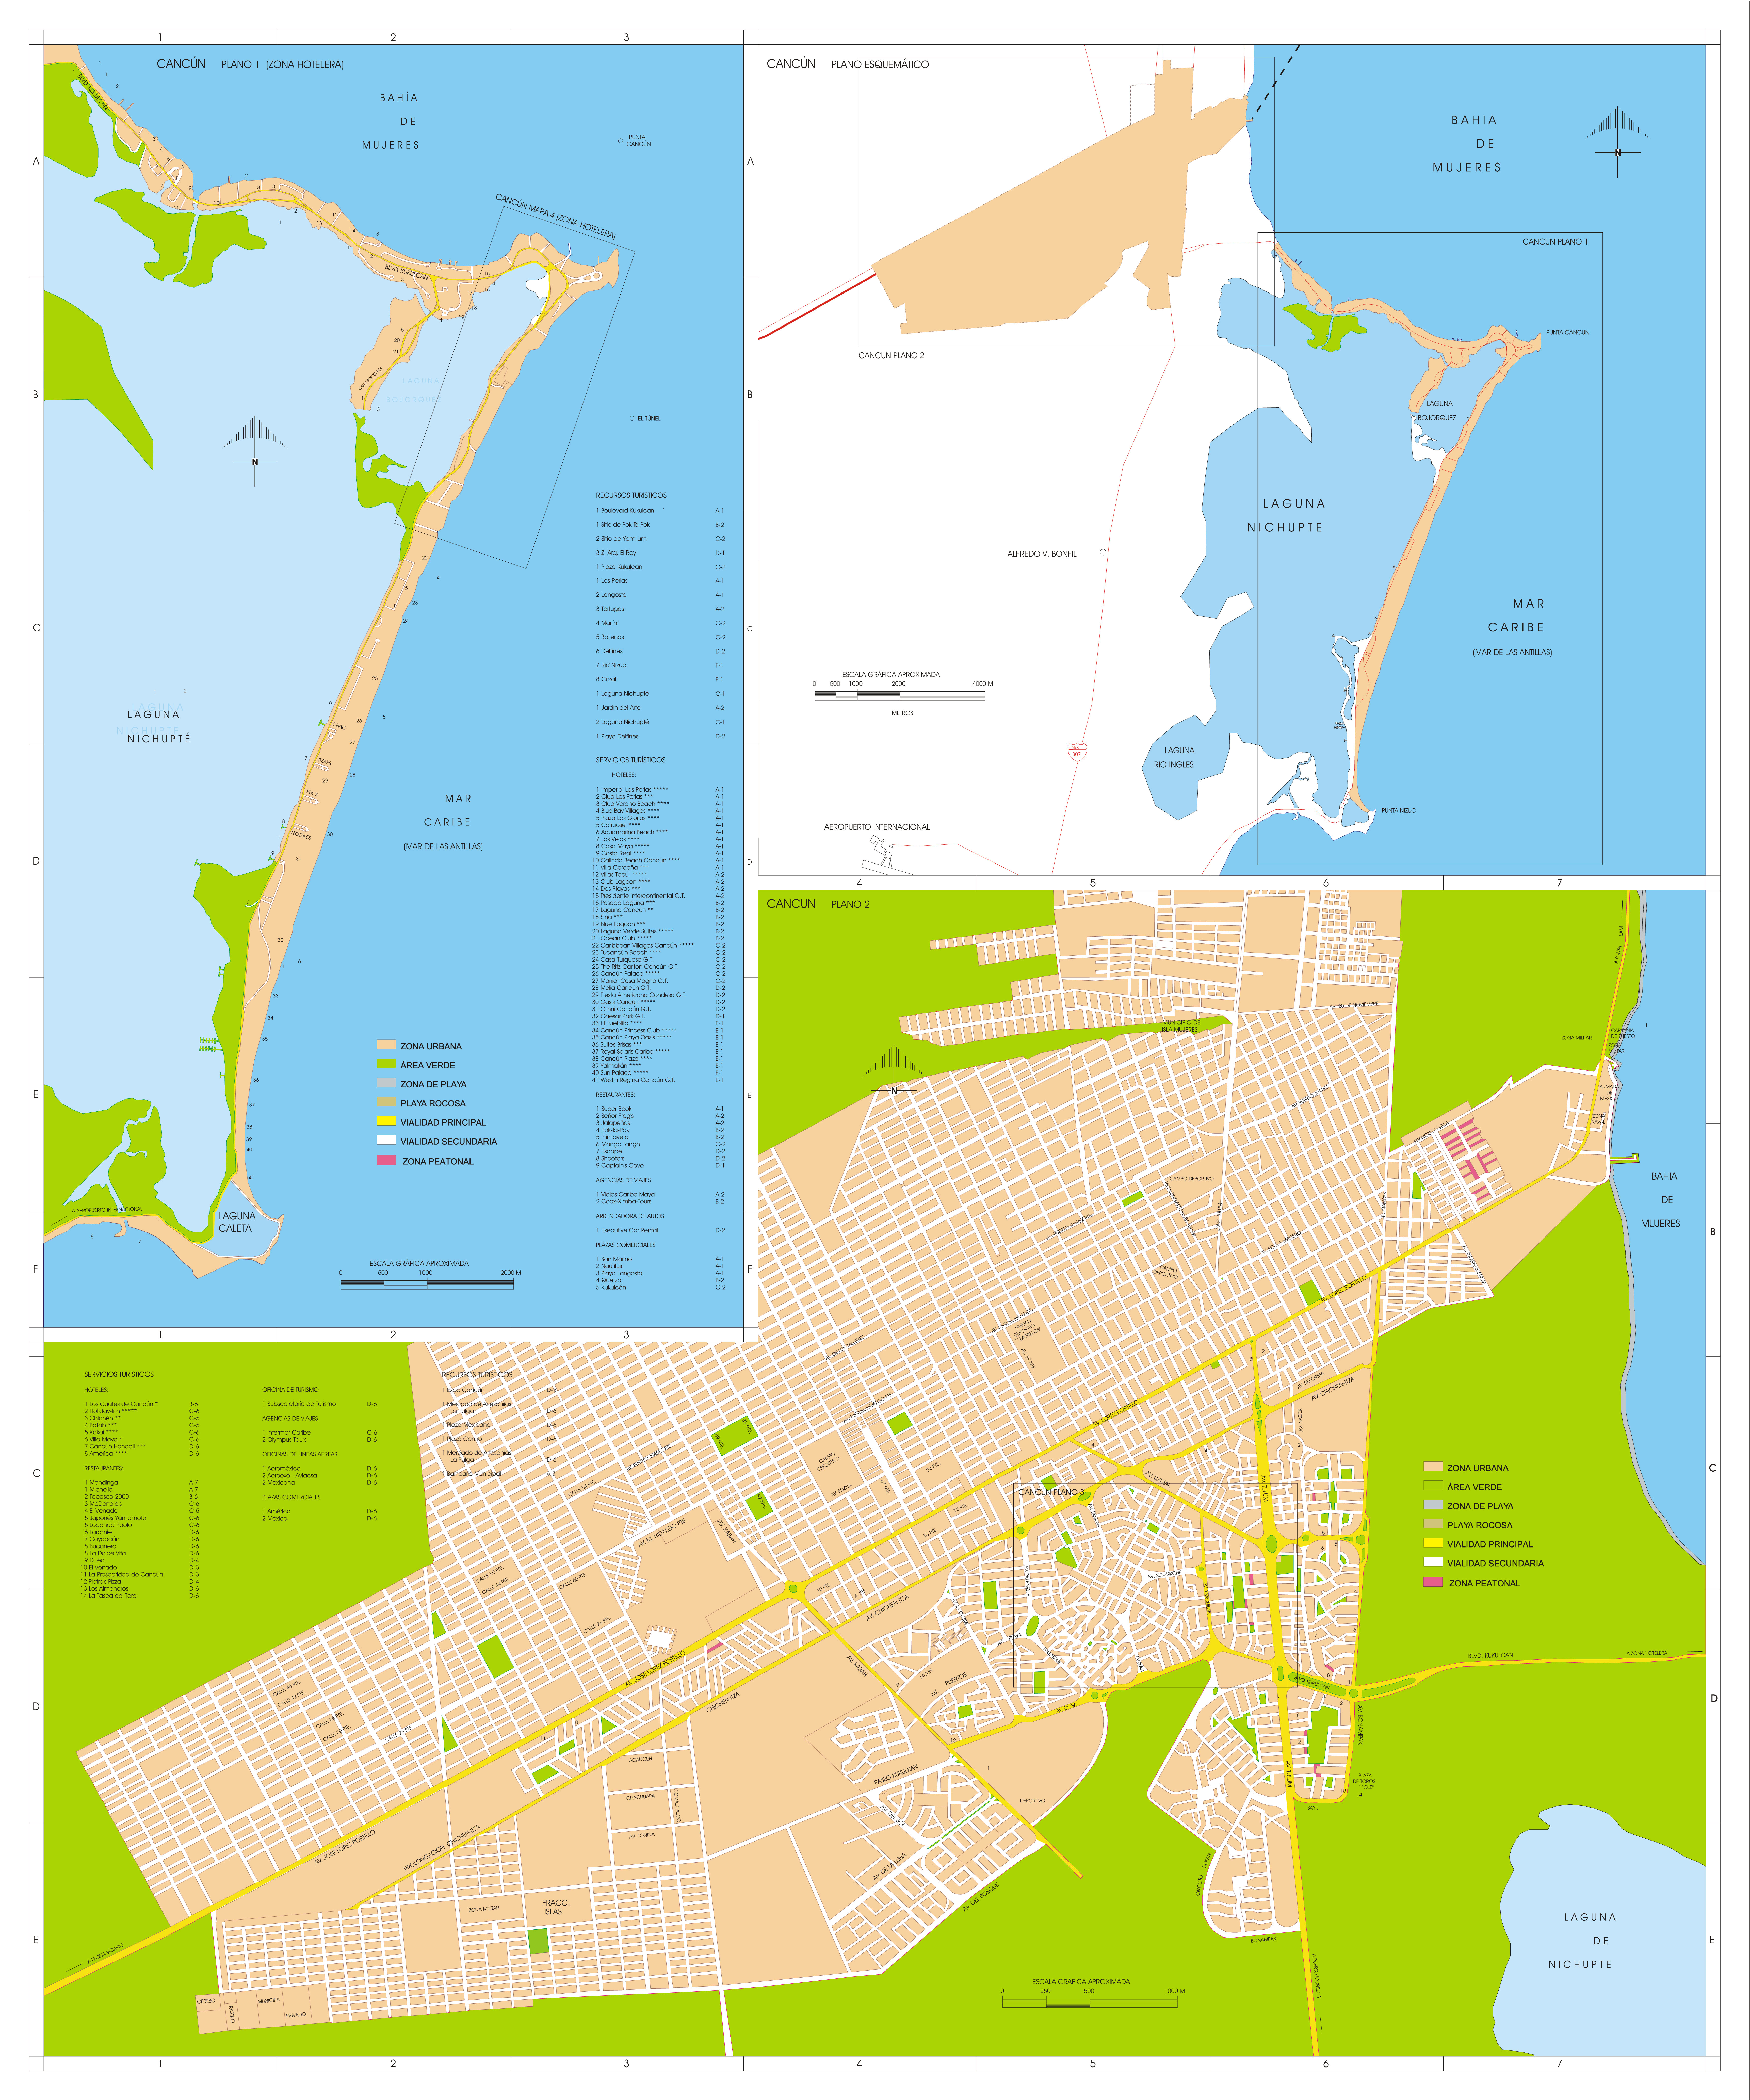 Mapa De Cancun Tamano Completo Gifex